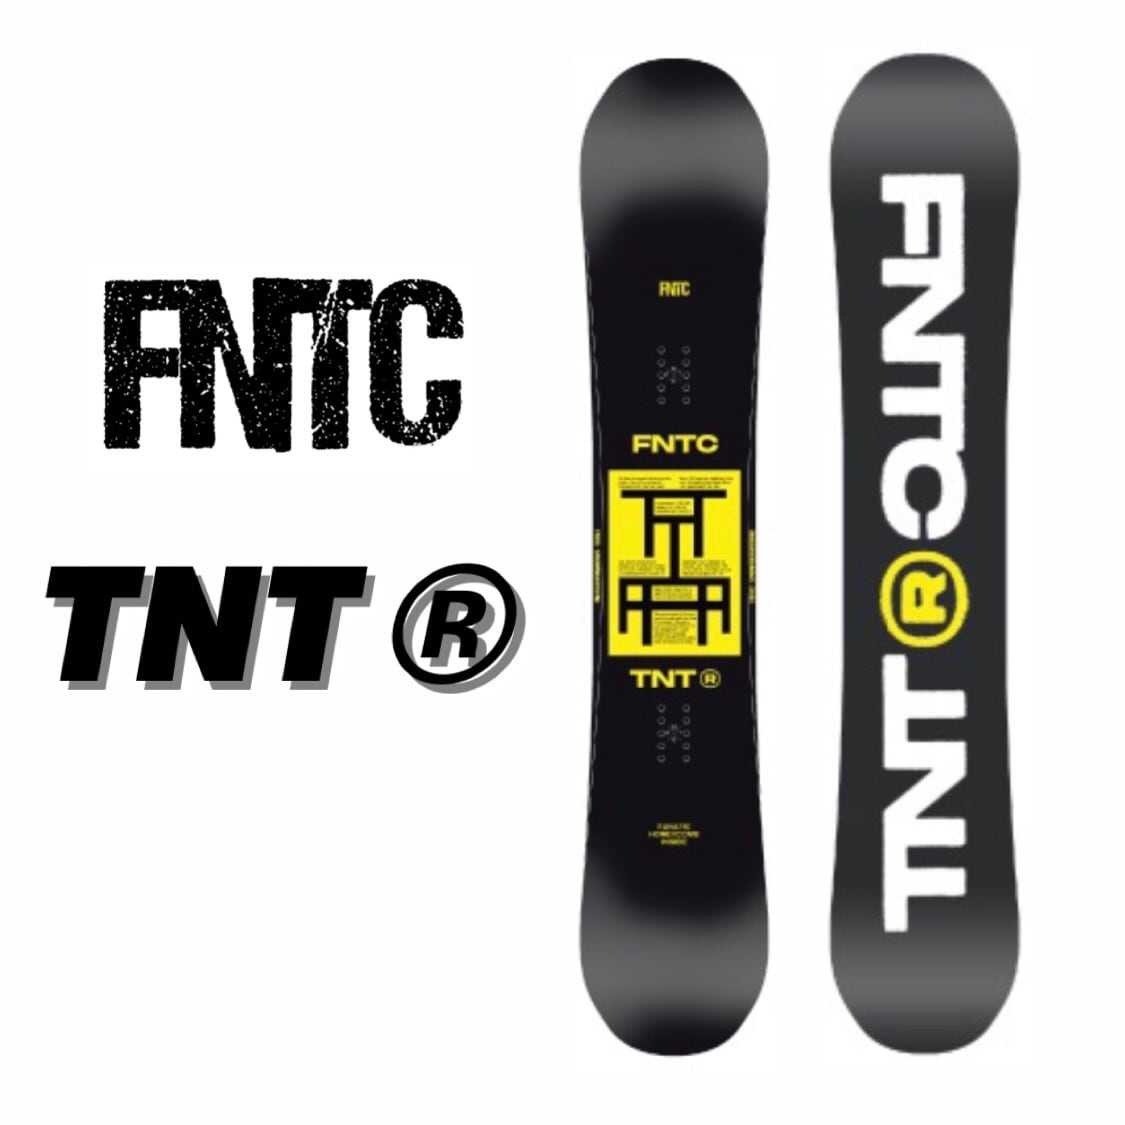 スポーツ/アウトドアスノーボード FNTC TNTc 20-21 150cm